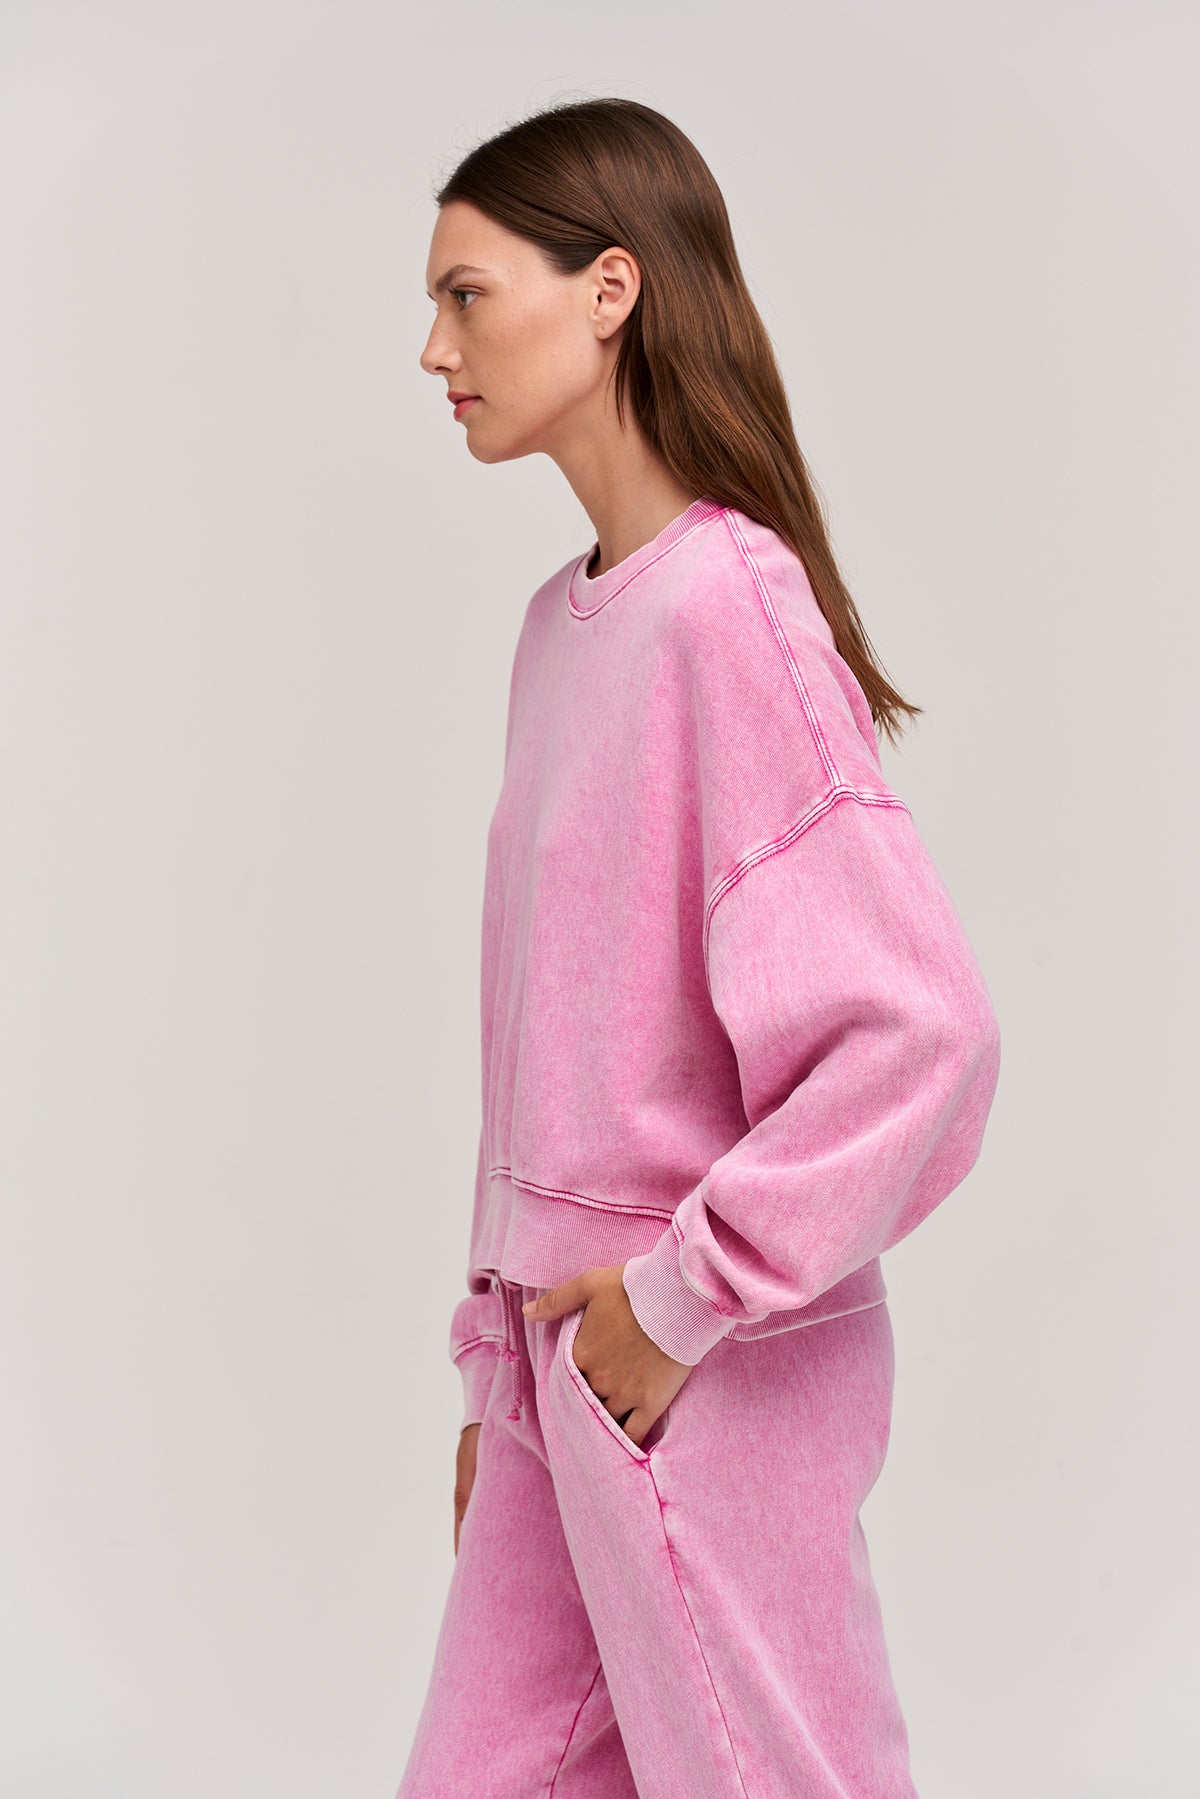   lindsey fleece sweatshirt pink side 